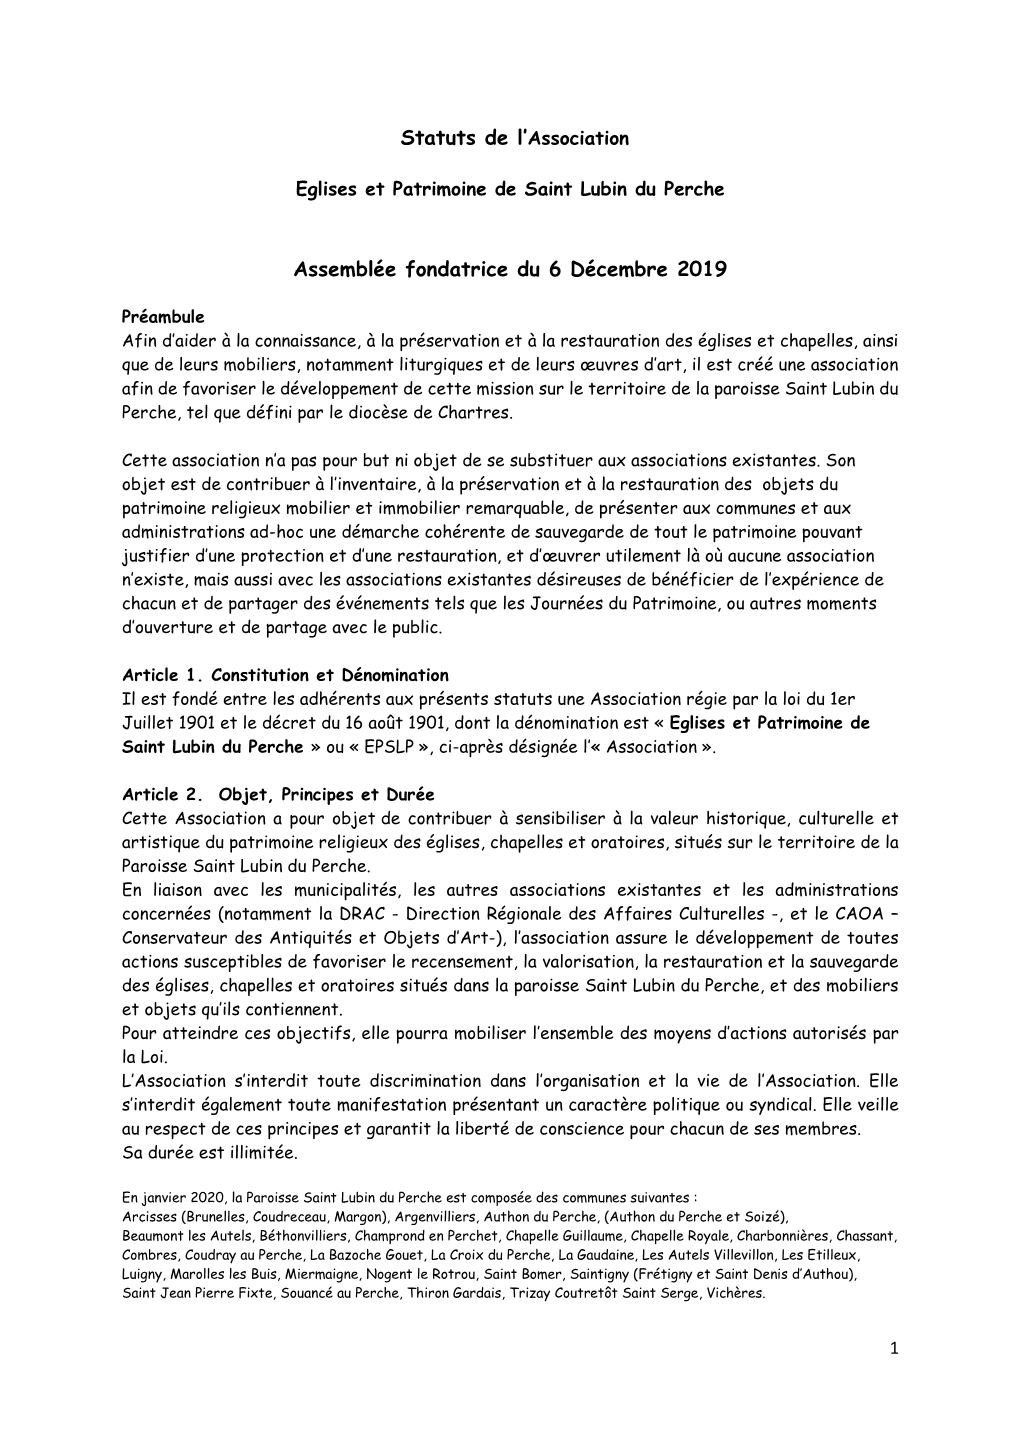 Statuts De L'association Assemblée Fondatrice Du 6 Décembre 2019